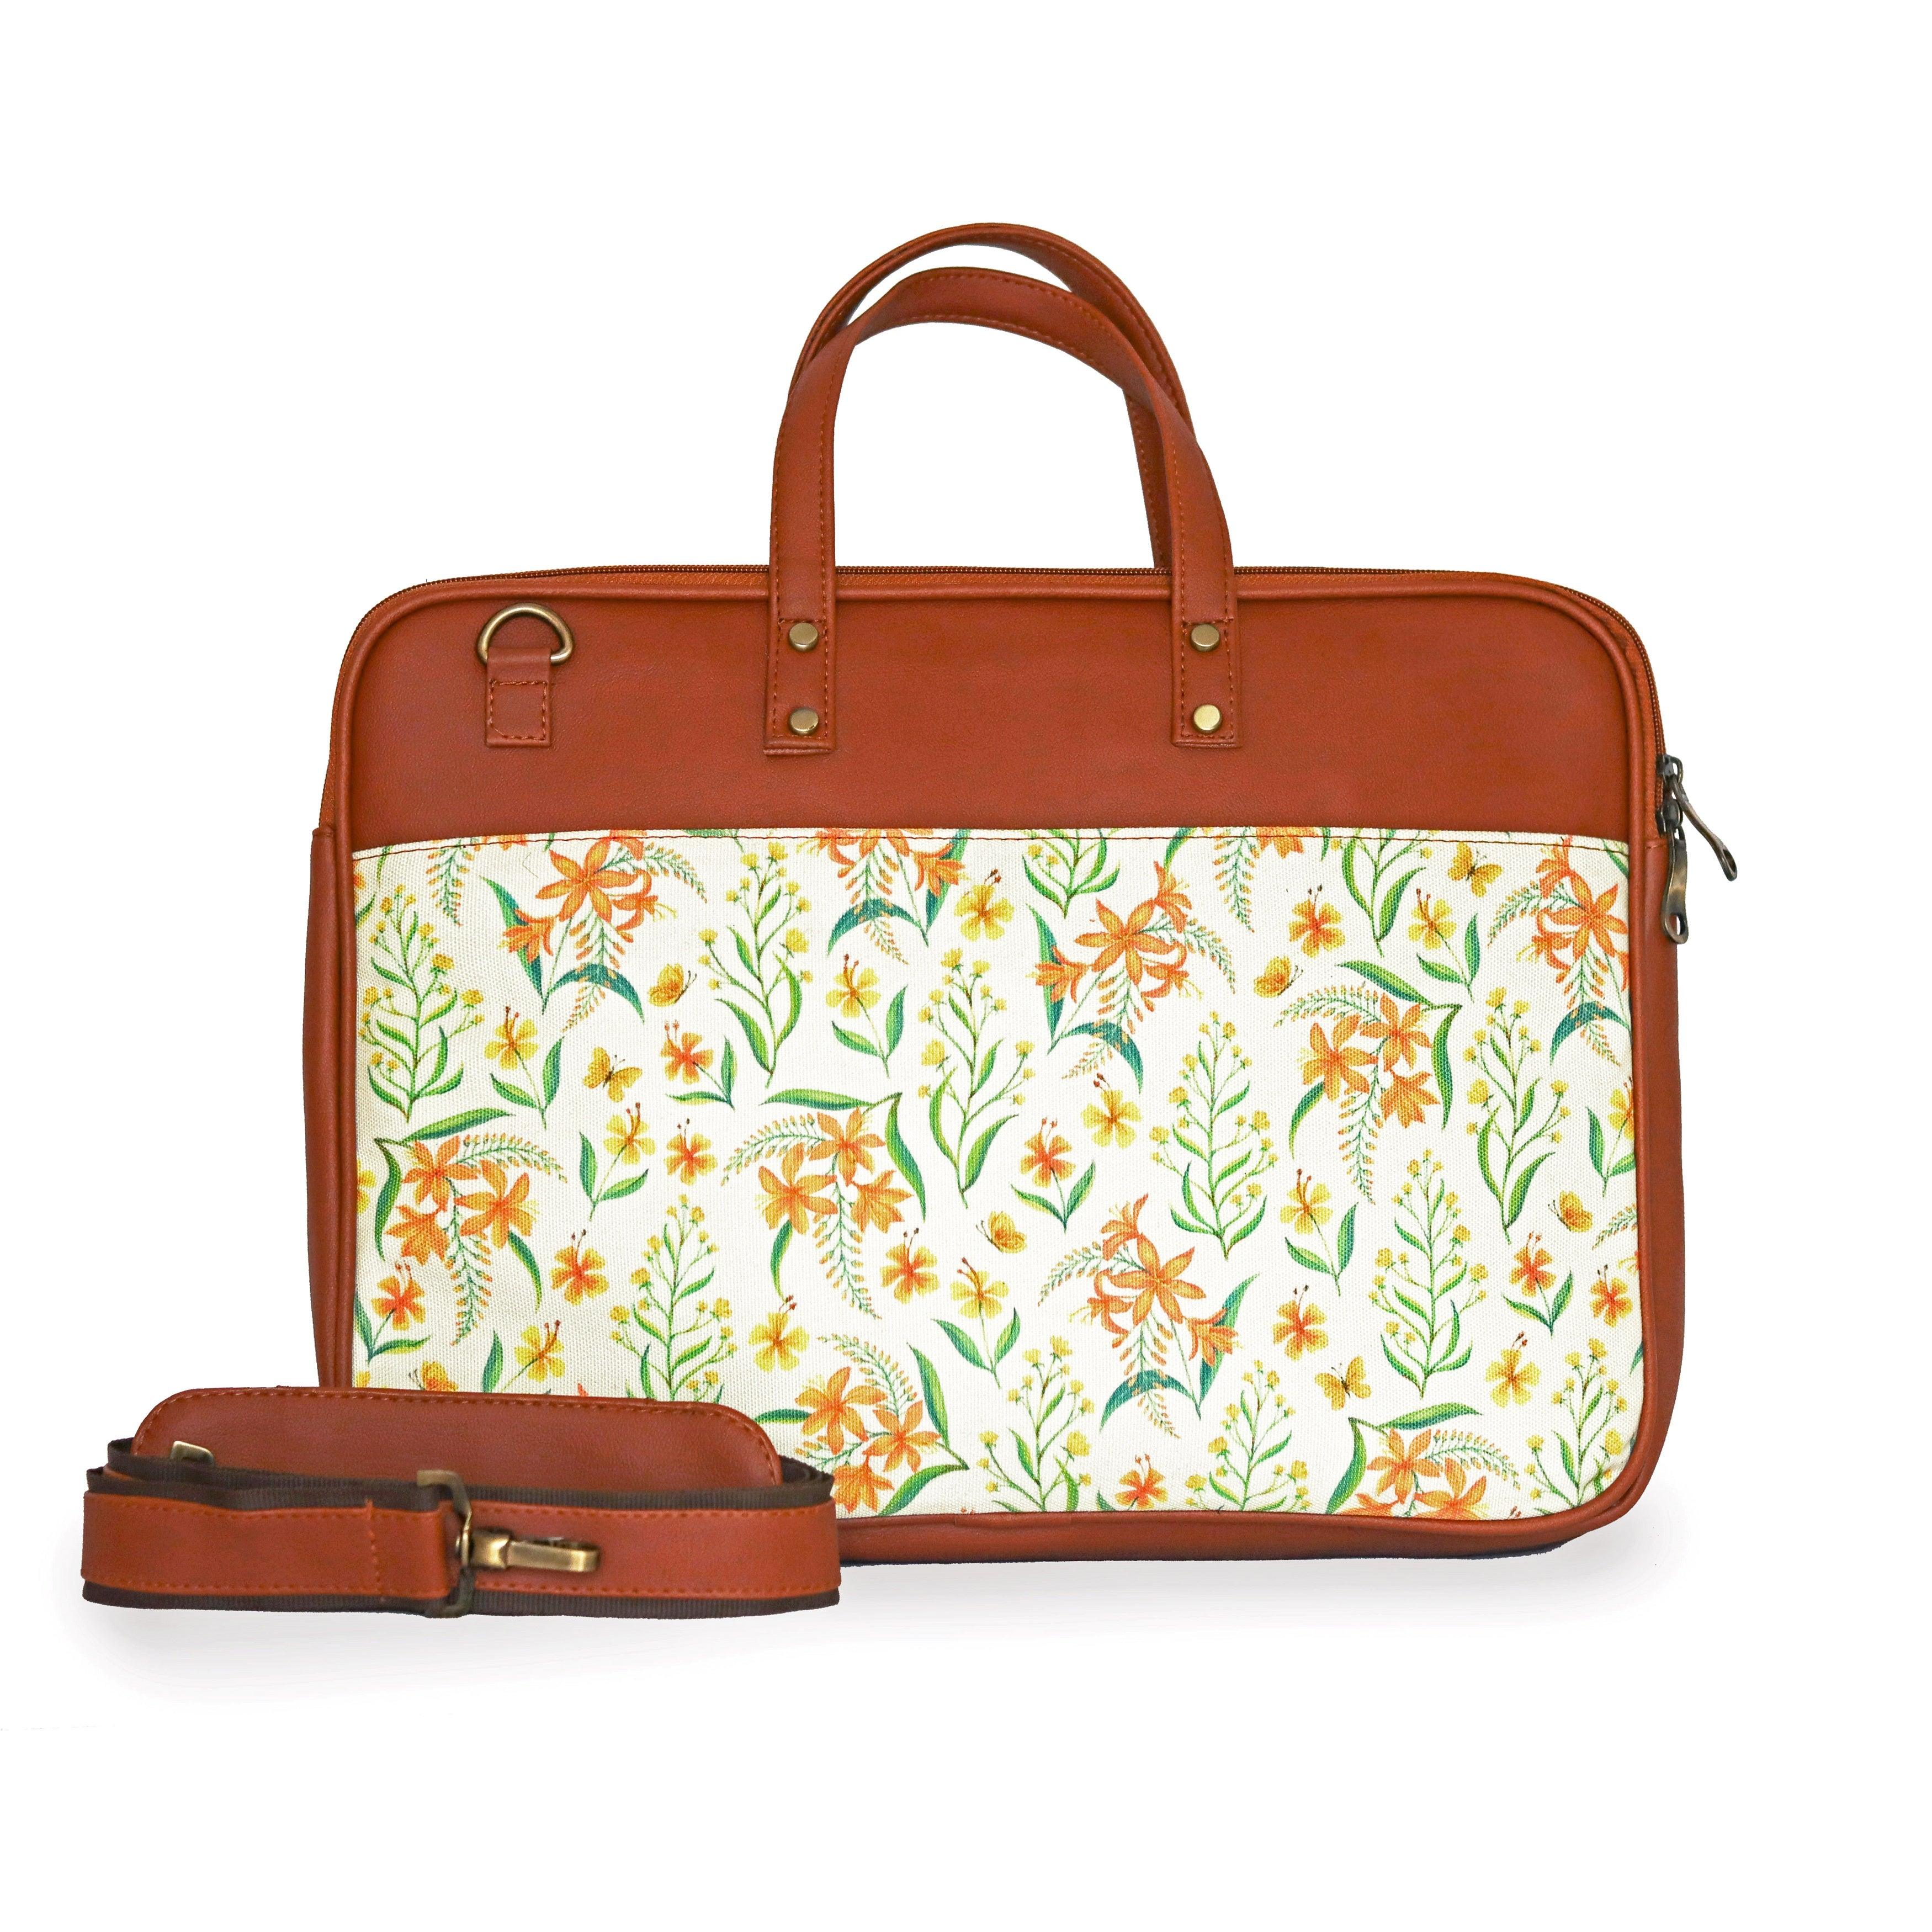 Ladies' Laptop Bags | Best Work Bags For Women | Radley London